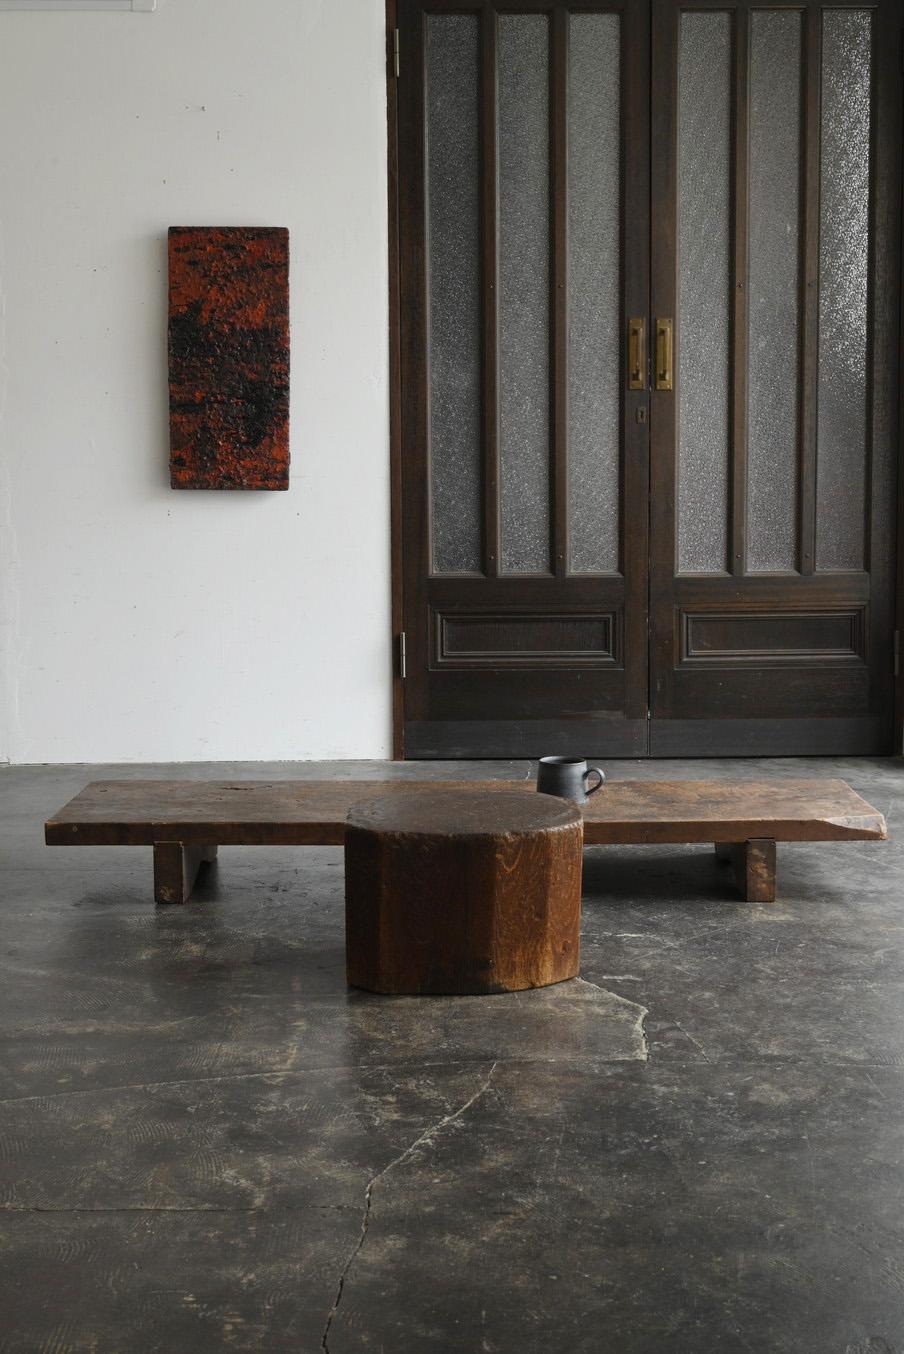 Wir möchten Ihnen einen alten japanischen Holztisch mit einem attraktiven Aussehen vorstellen.
Dieser Tisch wurde ursprünglich als Werkbank verwendet.
Es wird angenommen, dass es in Privathäusern zum Schneiden von Stoffen verwendet wurde.
Das